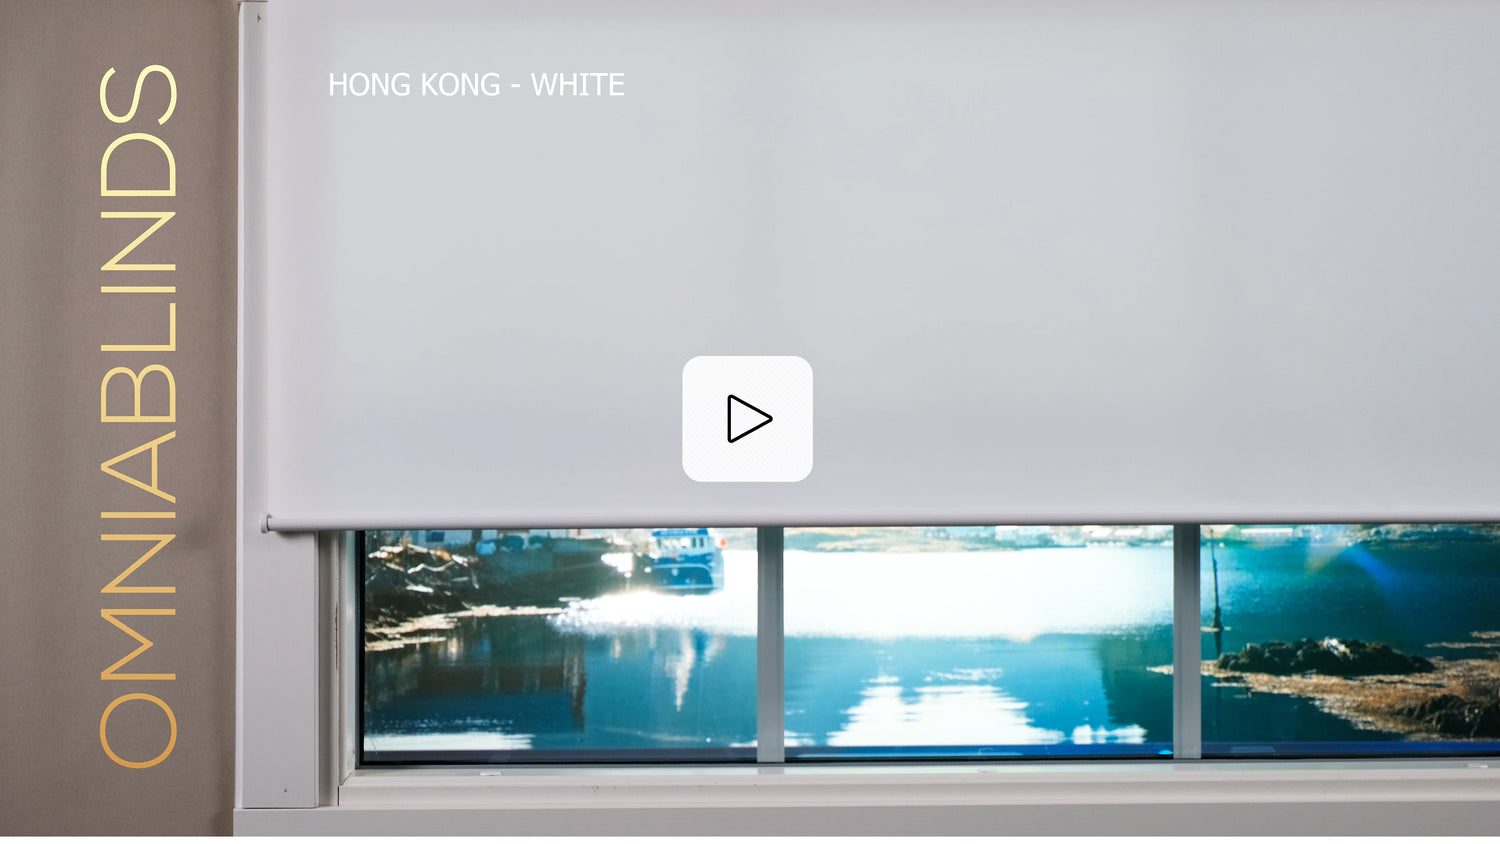 Hong Kong - White